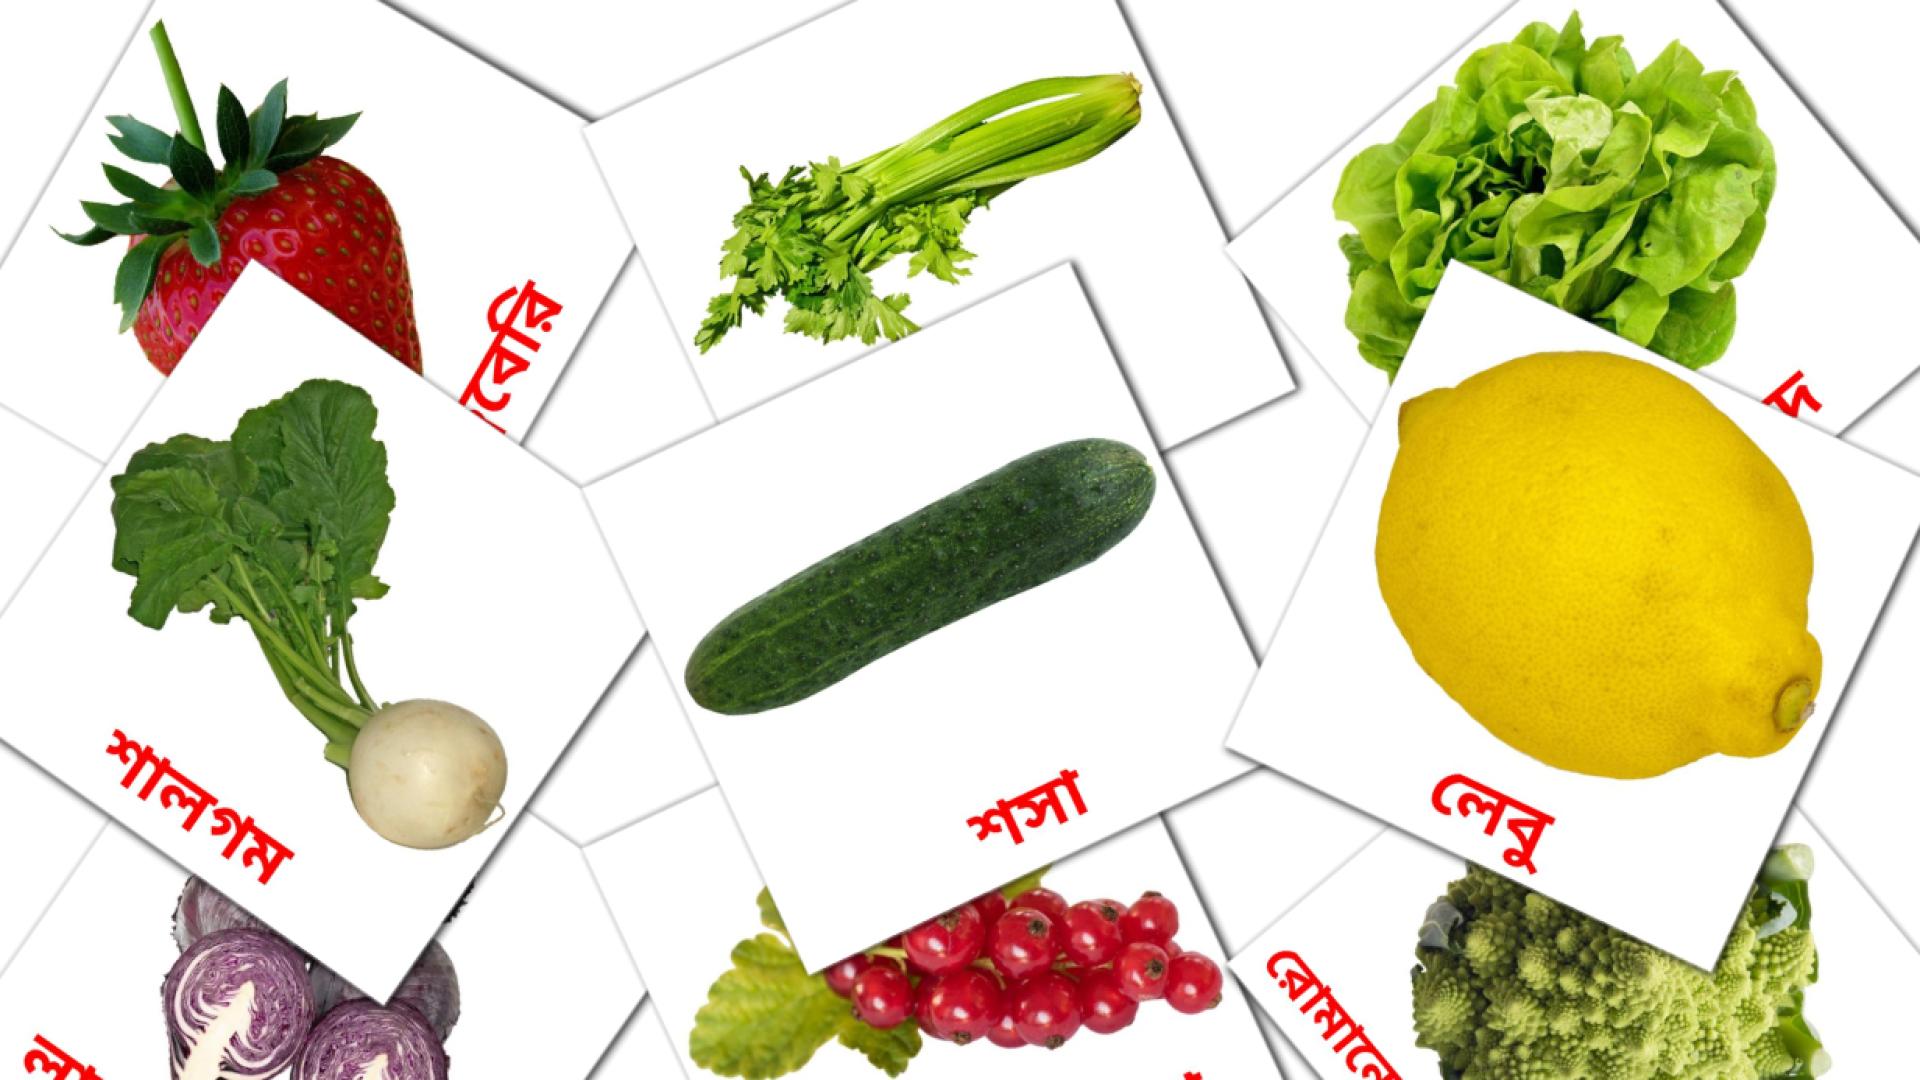 bengalí tarjetas de vocabulario en খাদ্য